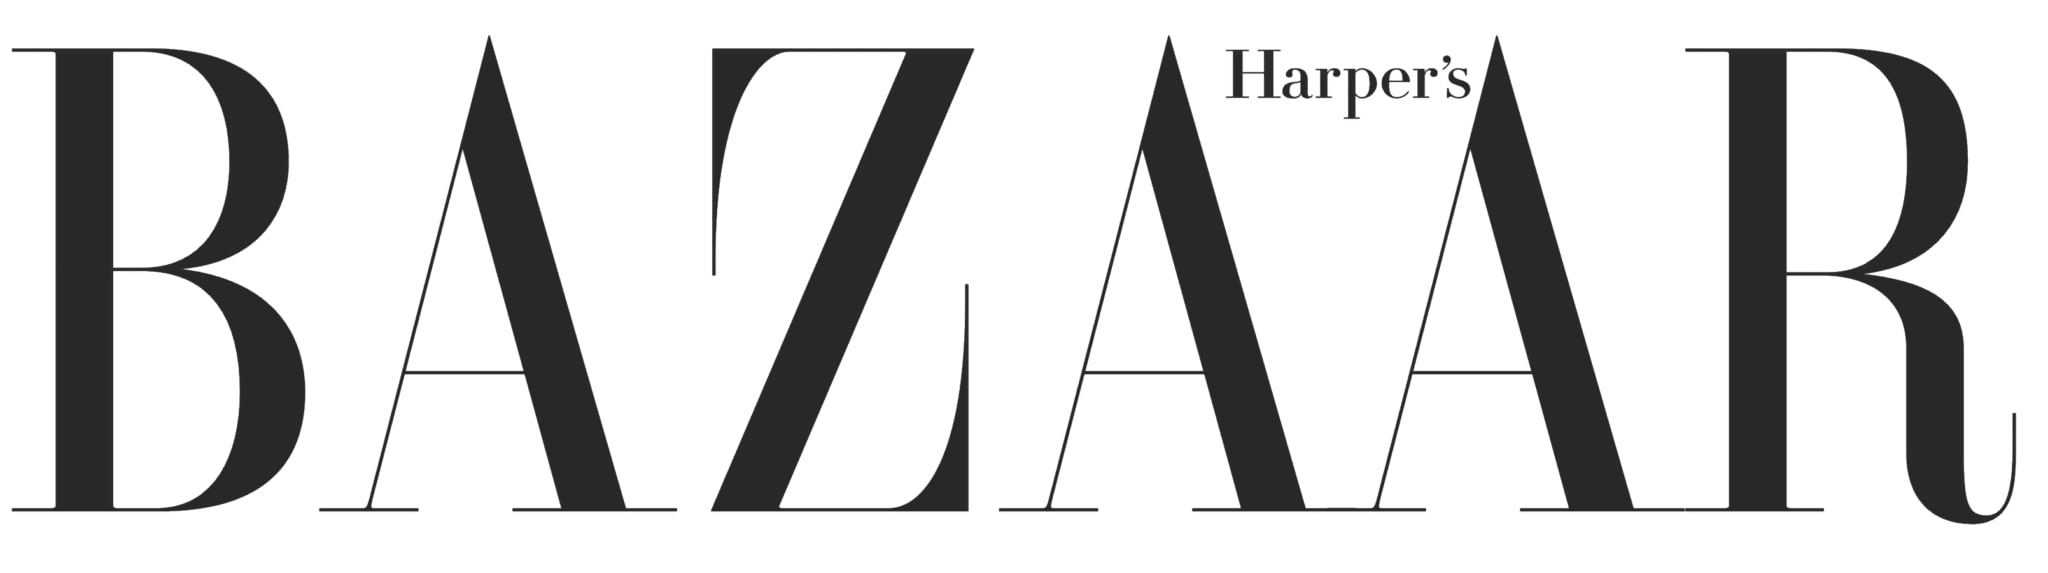 Harpers Bazaar logo logotype